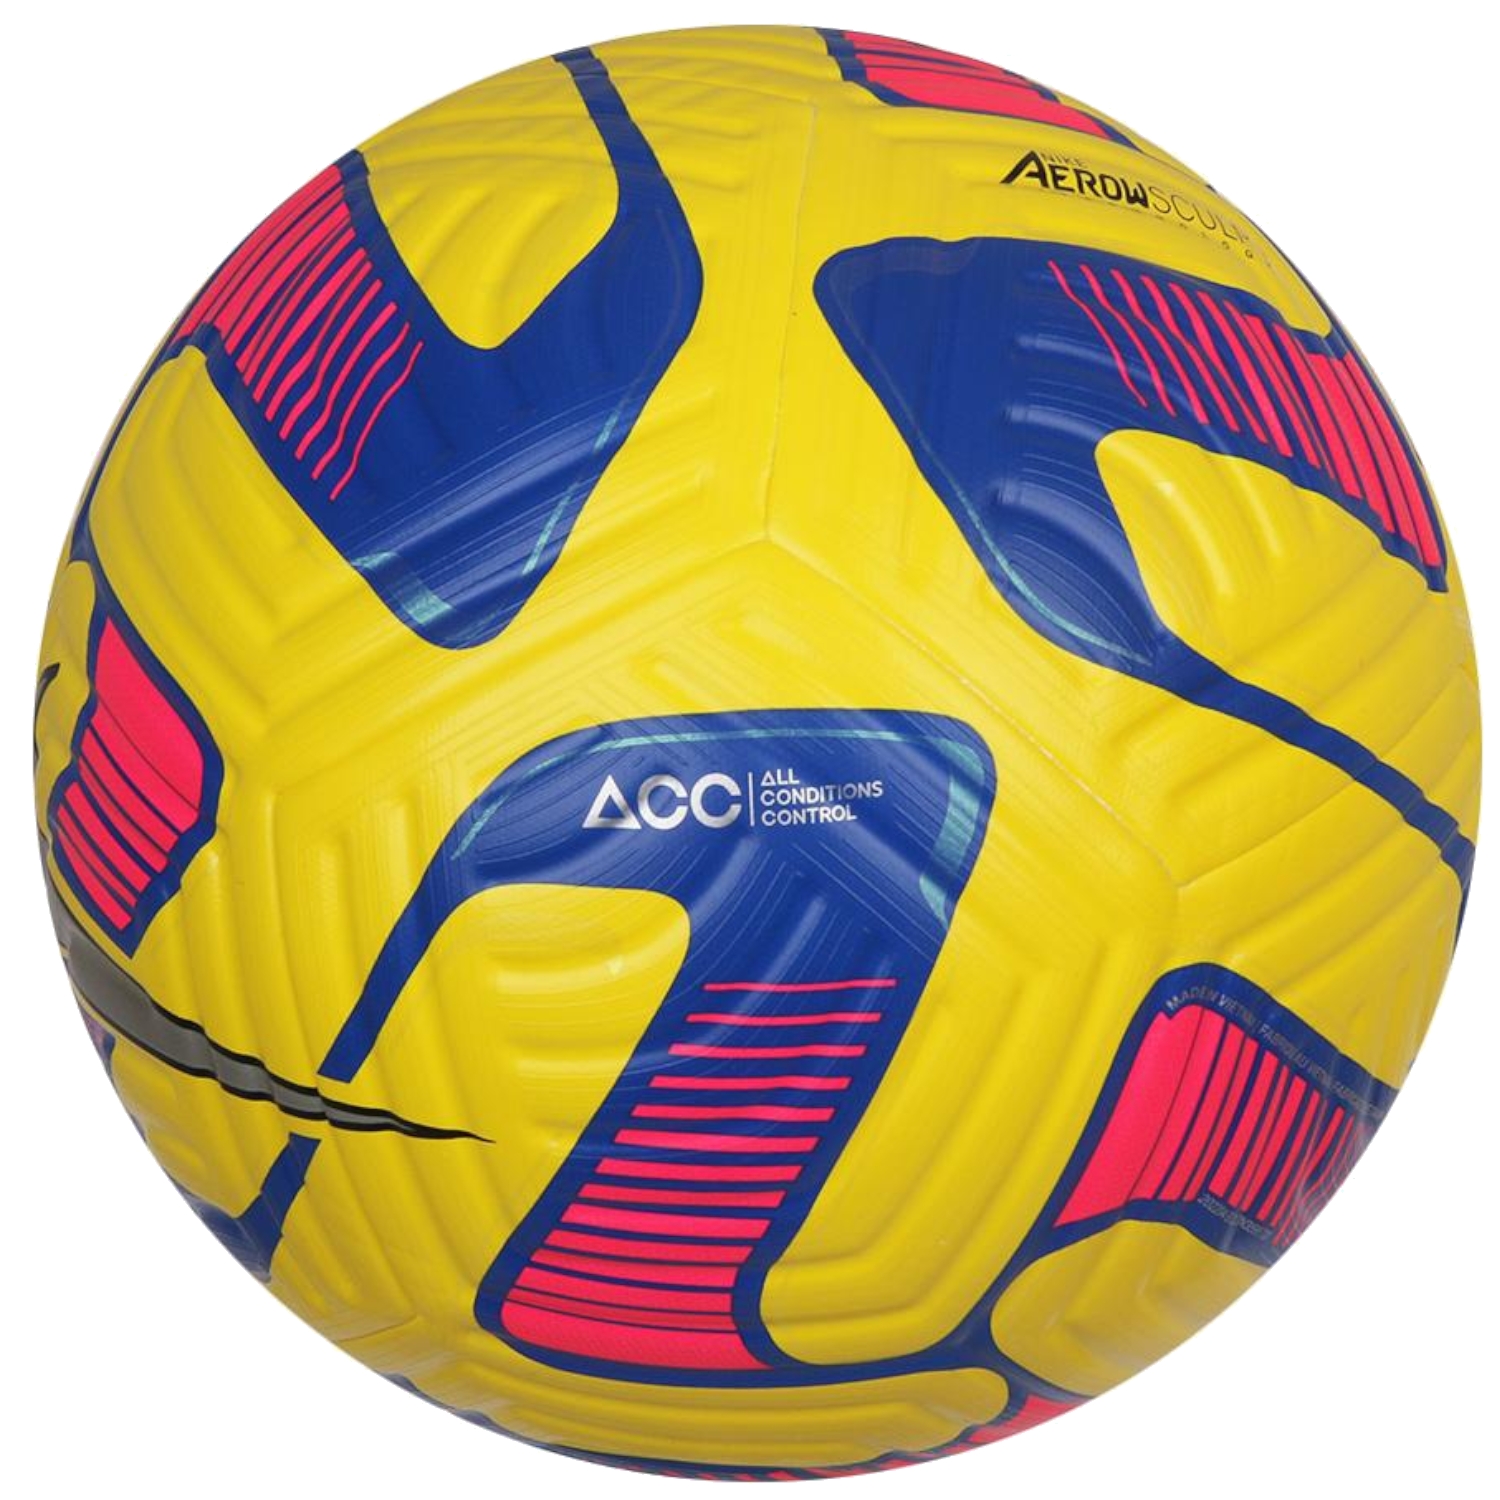 Мяч найк Флайт. Футбольный мяч найк Флайт. Мяч Nike Flight синий желтый. Мяч найк желтый.